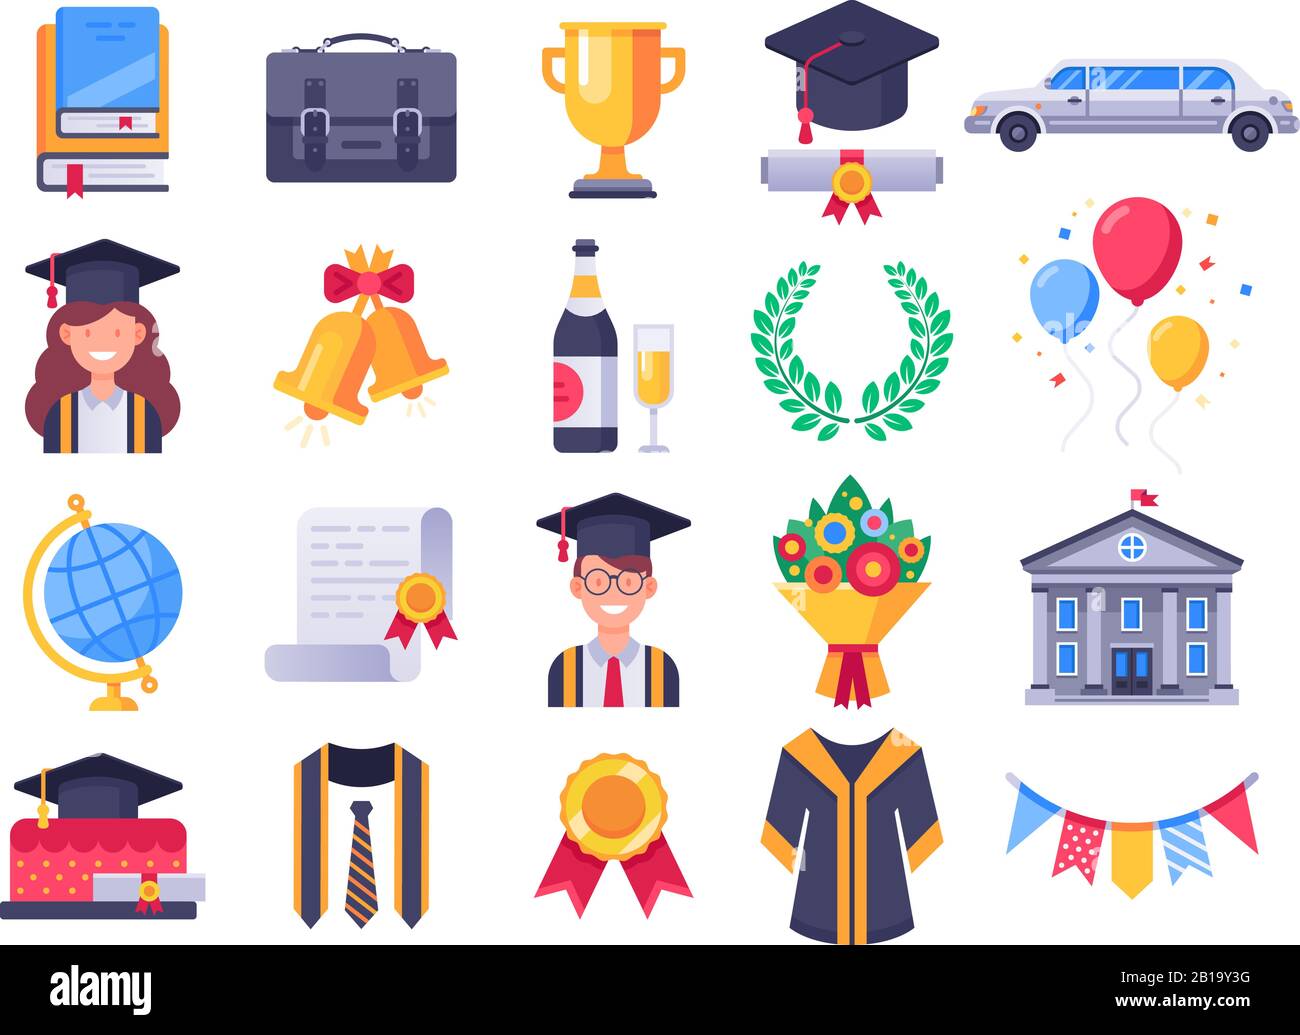 Symbole für den Abschlusstag. Hochschulabsolventen feiern, Graduiertencap und Studenten besitzen. Vektorgrafiksatz für das Symbol "Untersuchungen" Stock Vektor